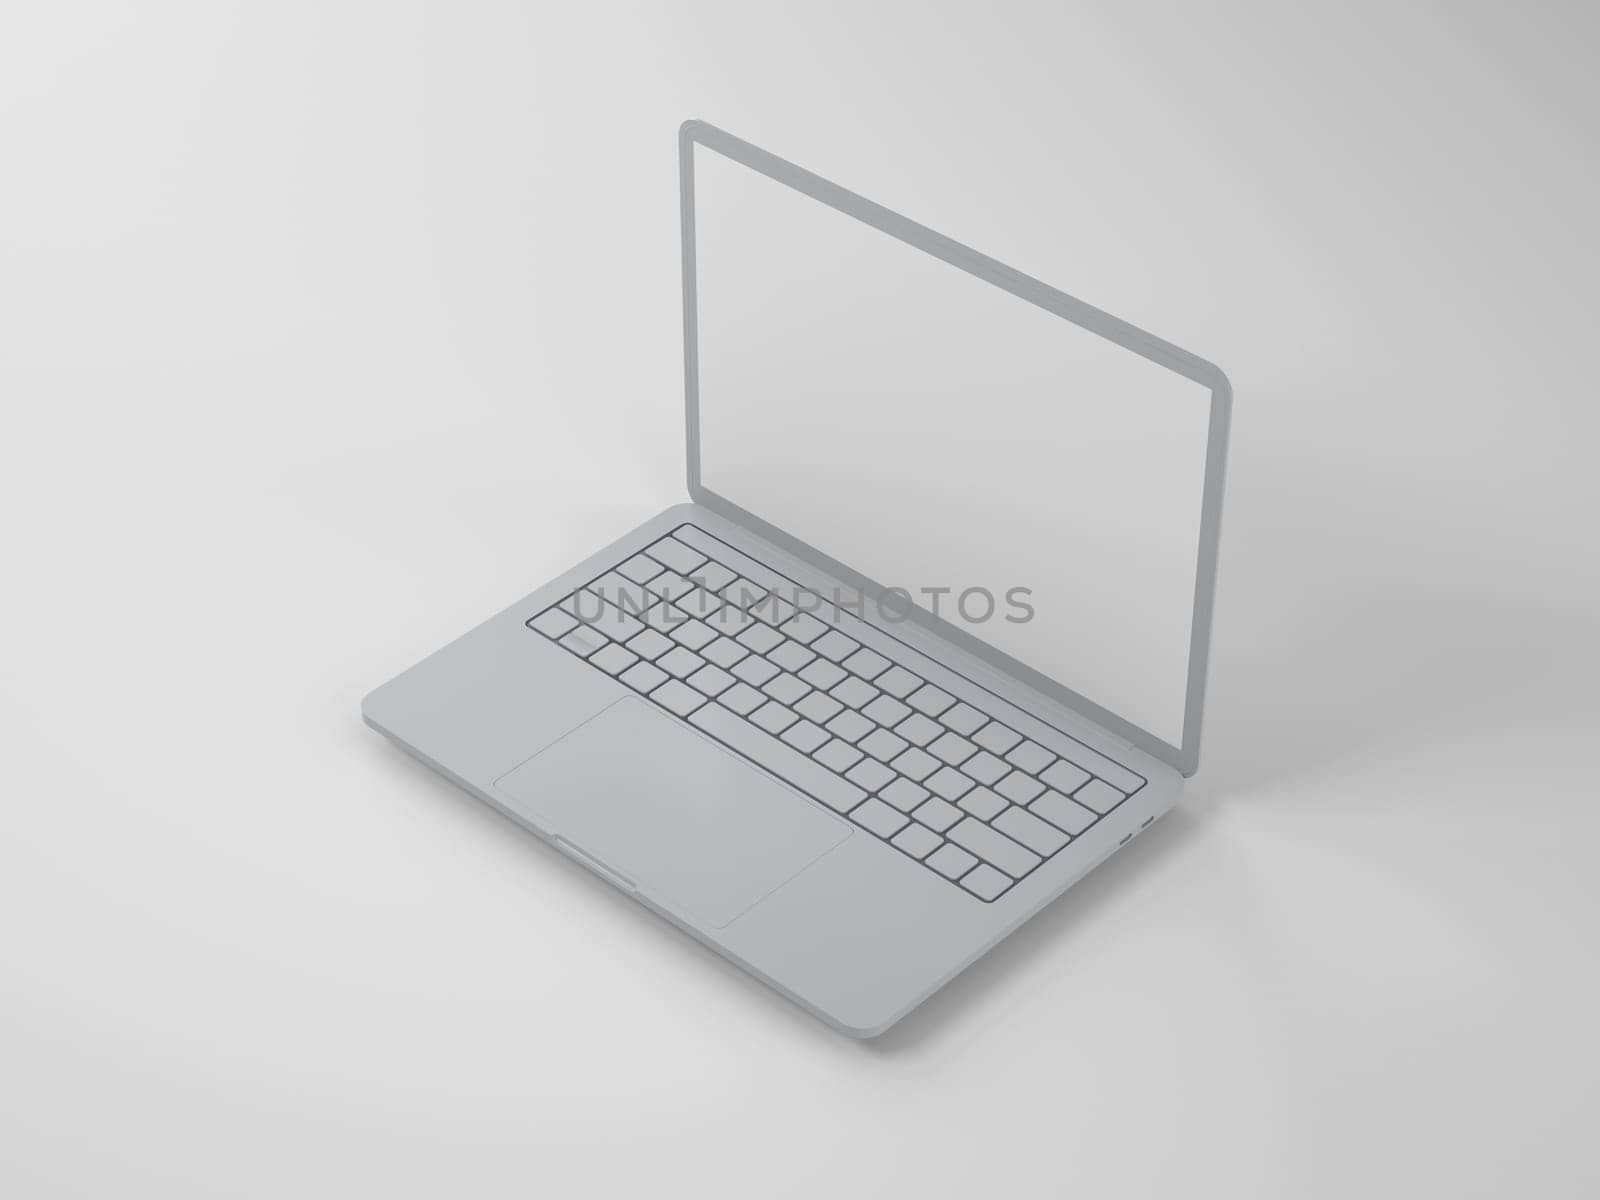 Open grey laptop on a light background by Mastak80